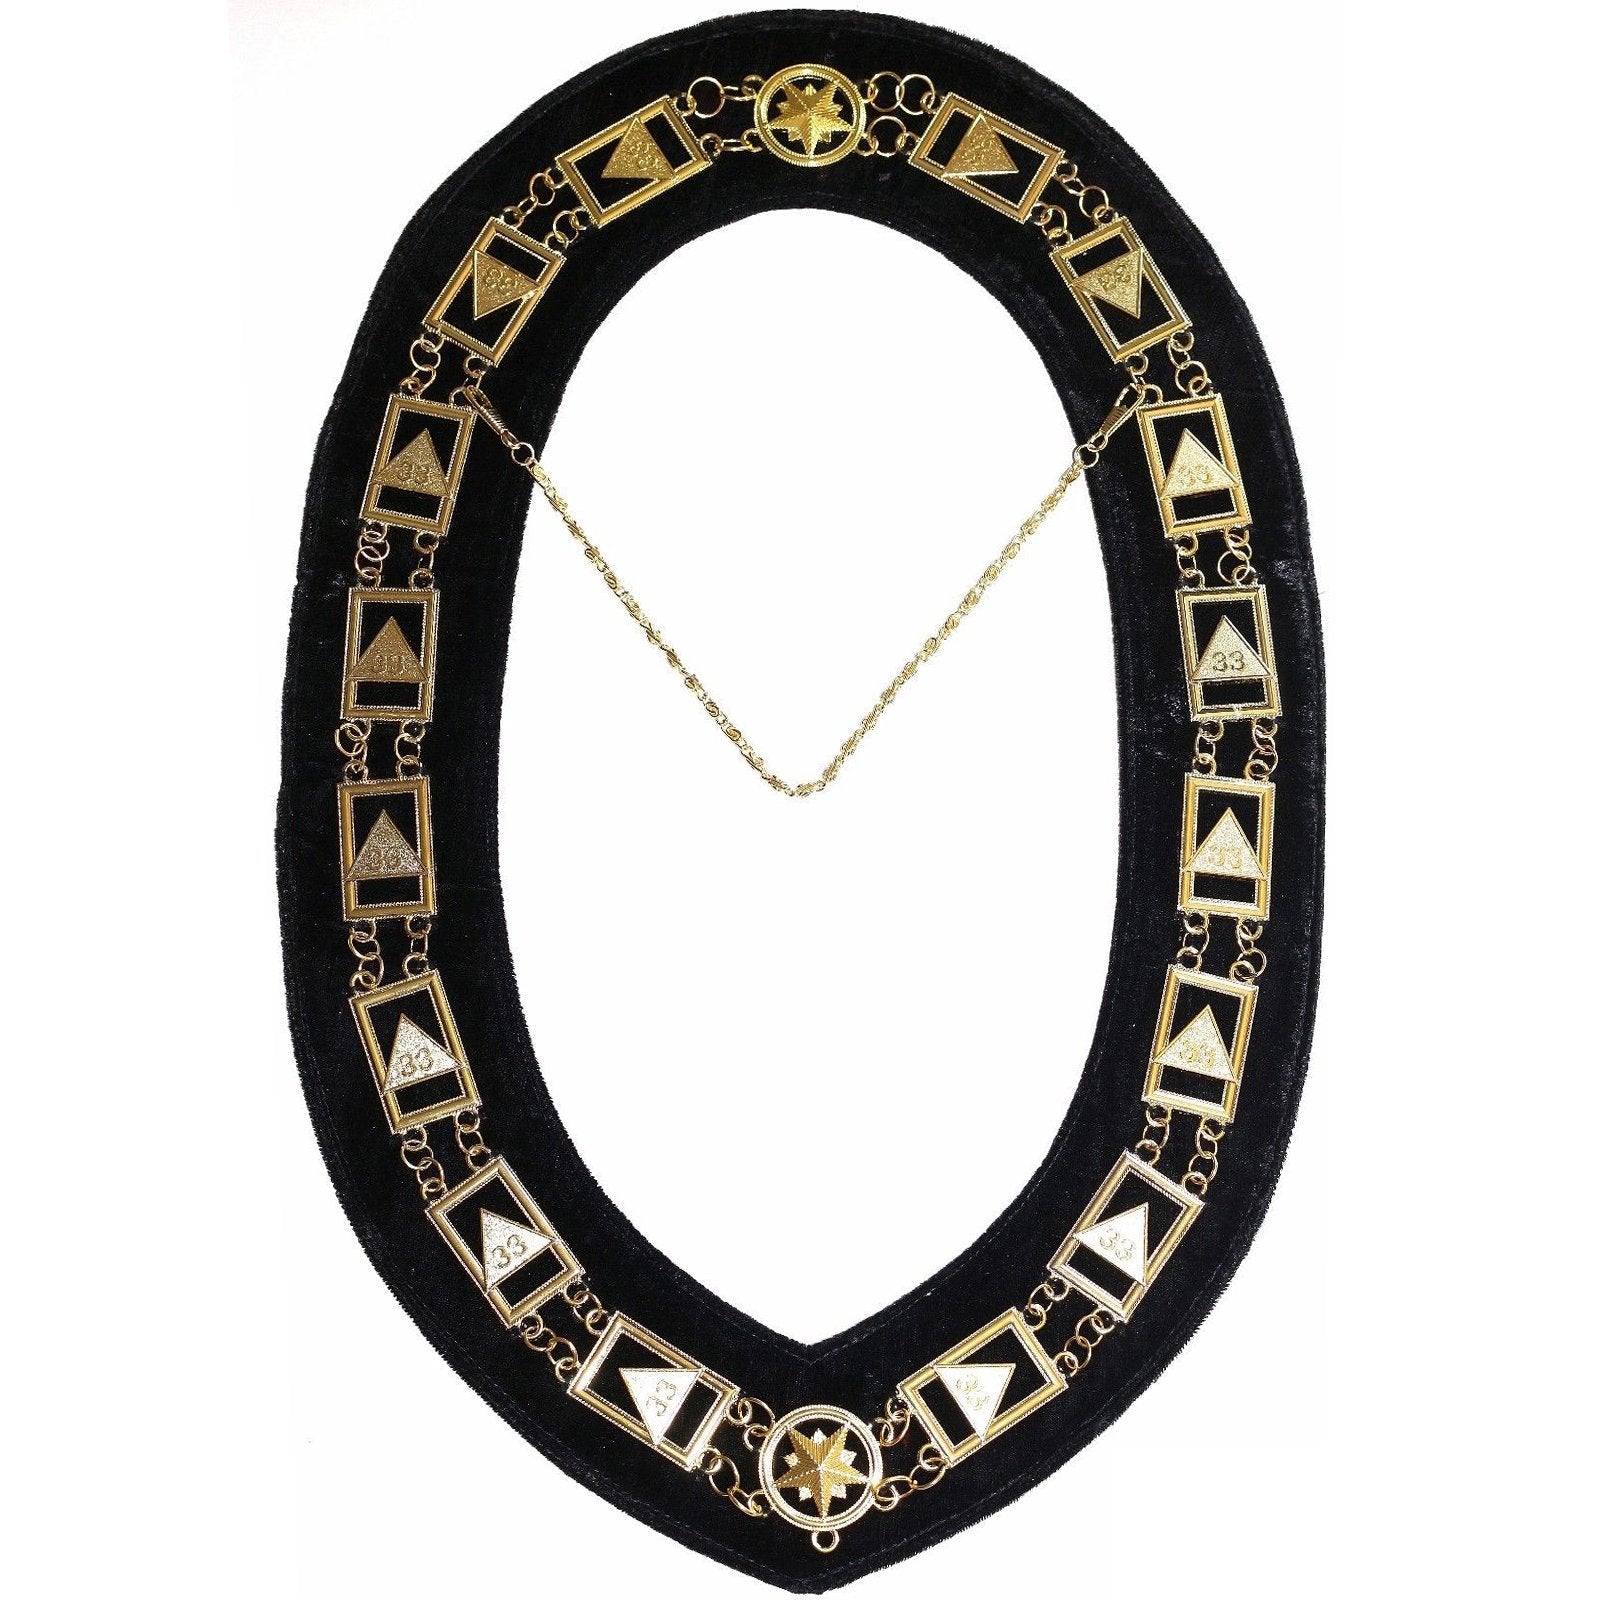 33rd Degree Scottish Rite Chain Collar - Gold Plated on Black Velvet - Bricks Masons